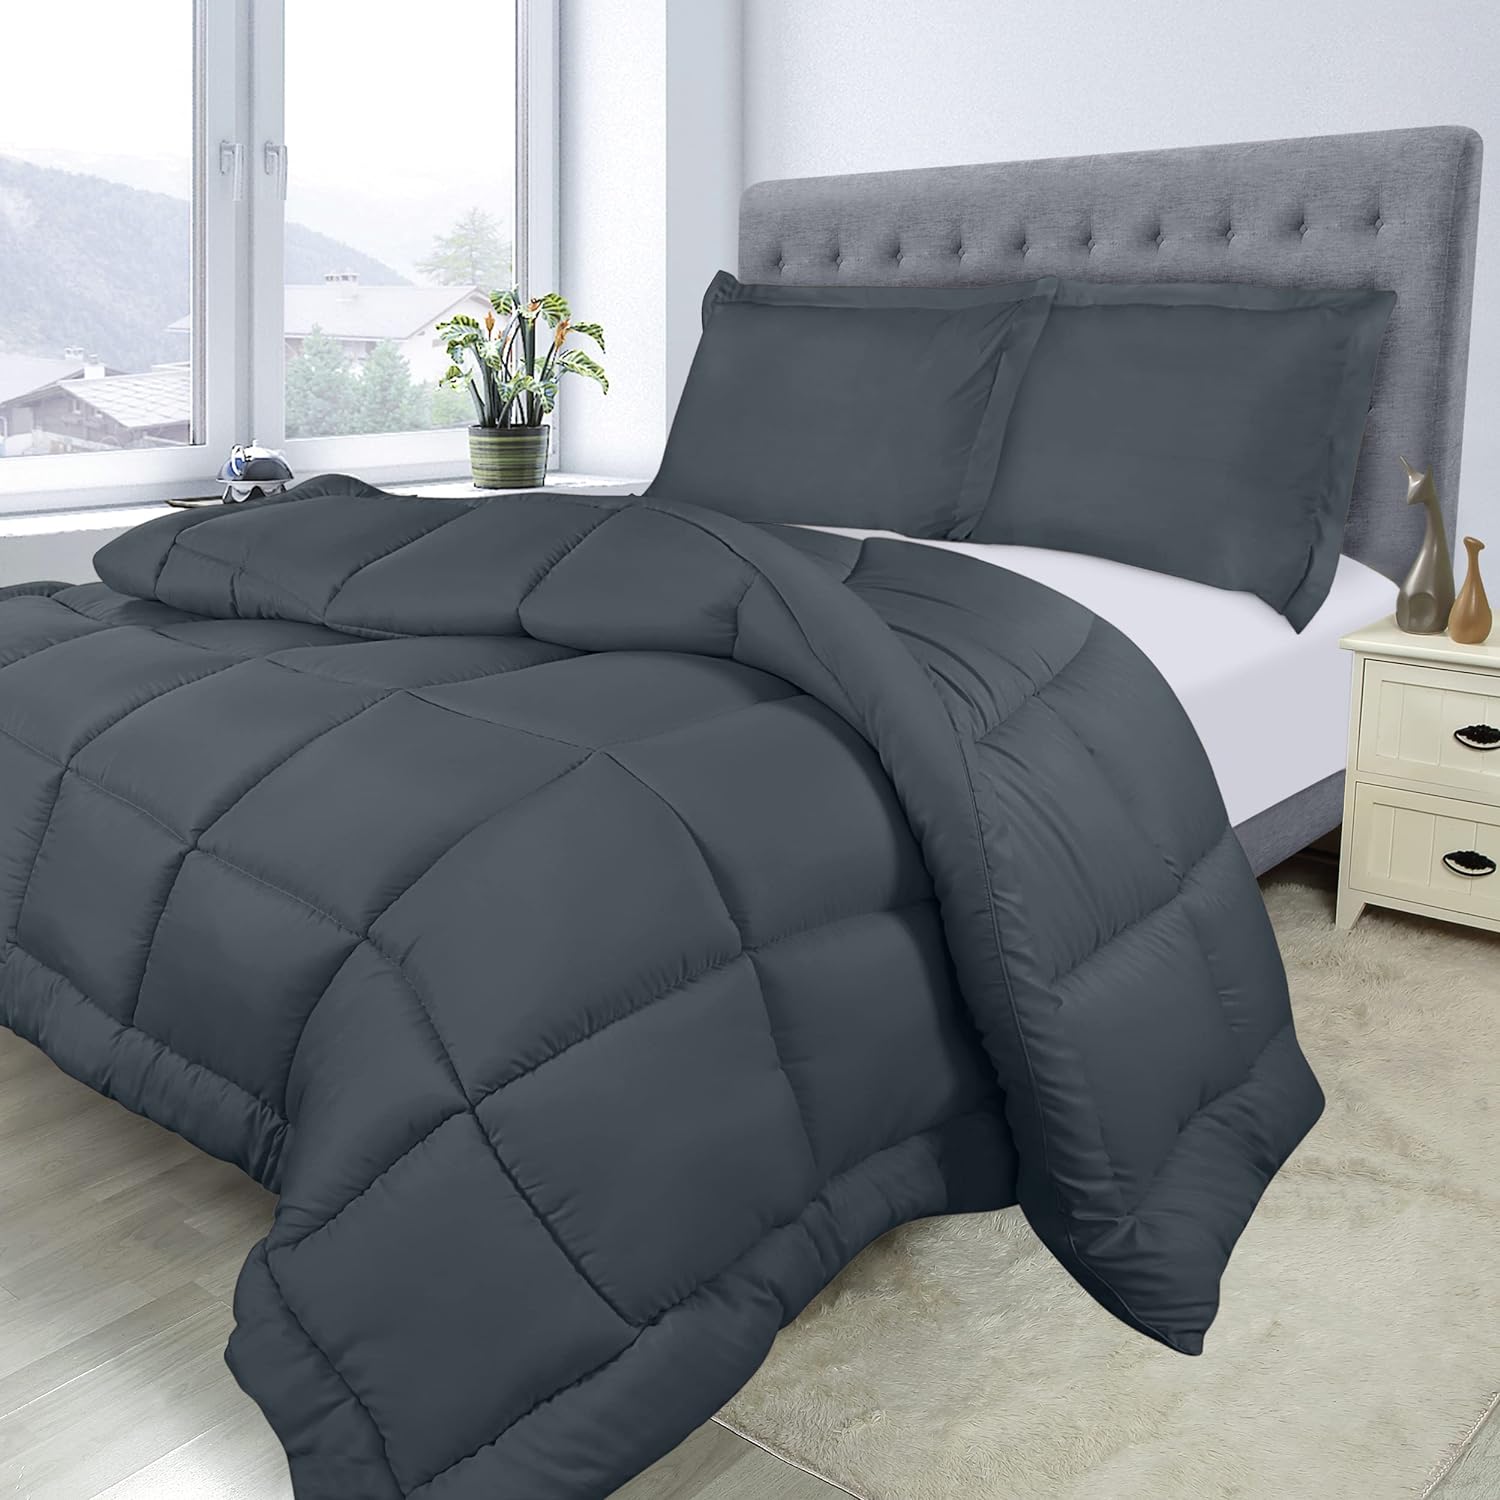 Utopia Bedding Queen Comforter Set (Grey) with 2 Pillow Shams - Bedding  Comforte